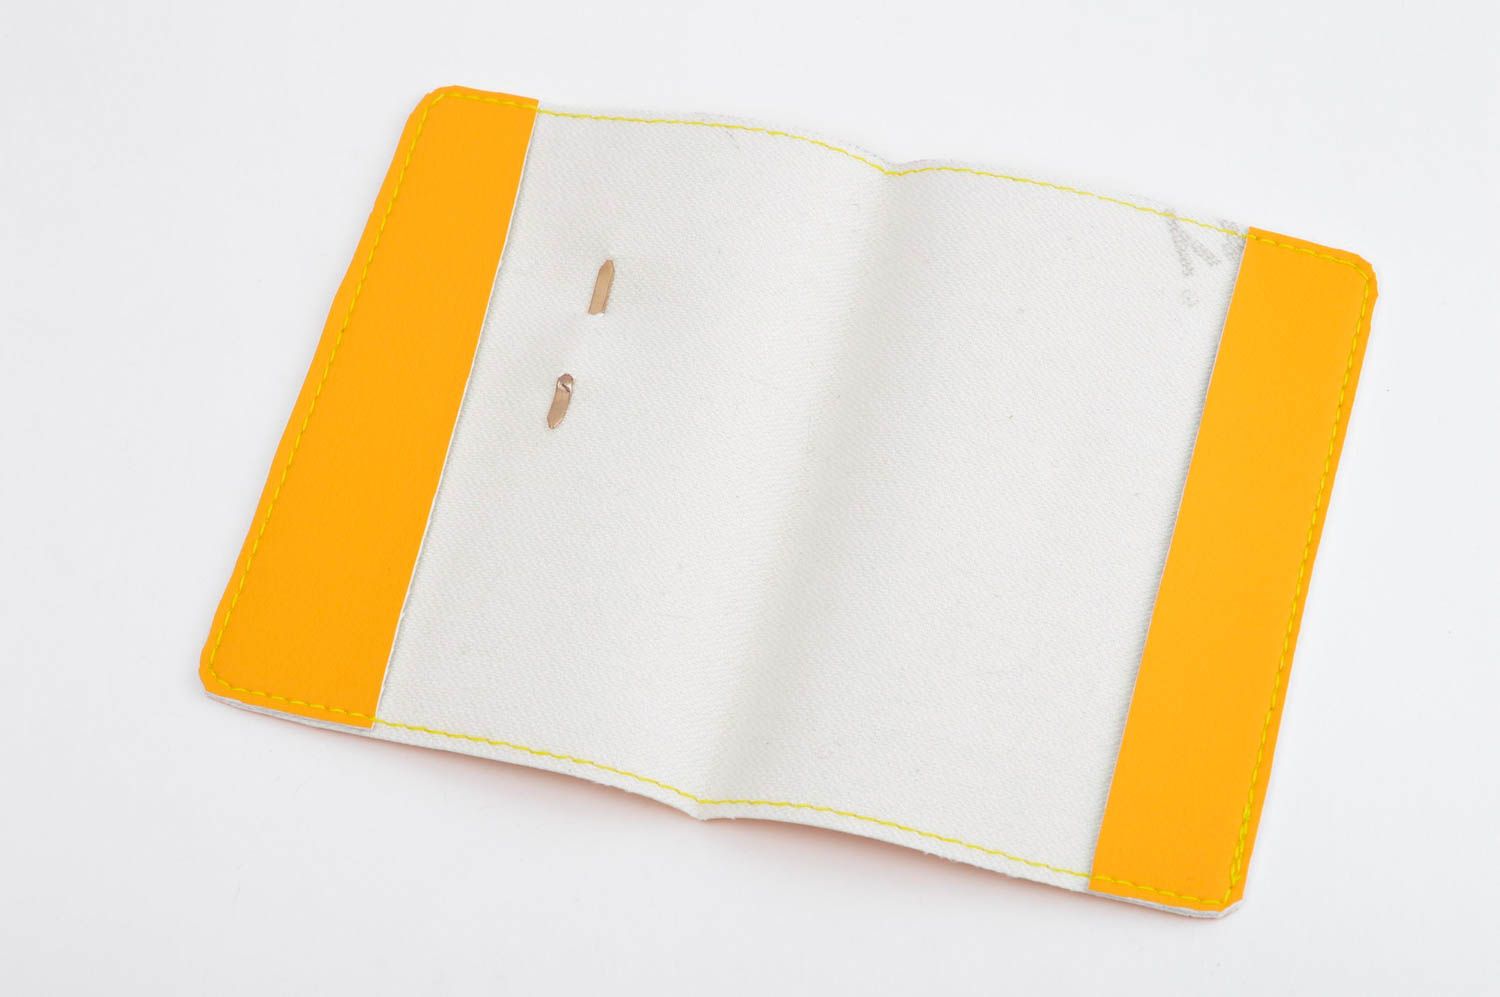 Обложка для документов хенд мейд оригинальный подарок обложка на паспорт желтая фото 5